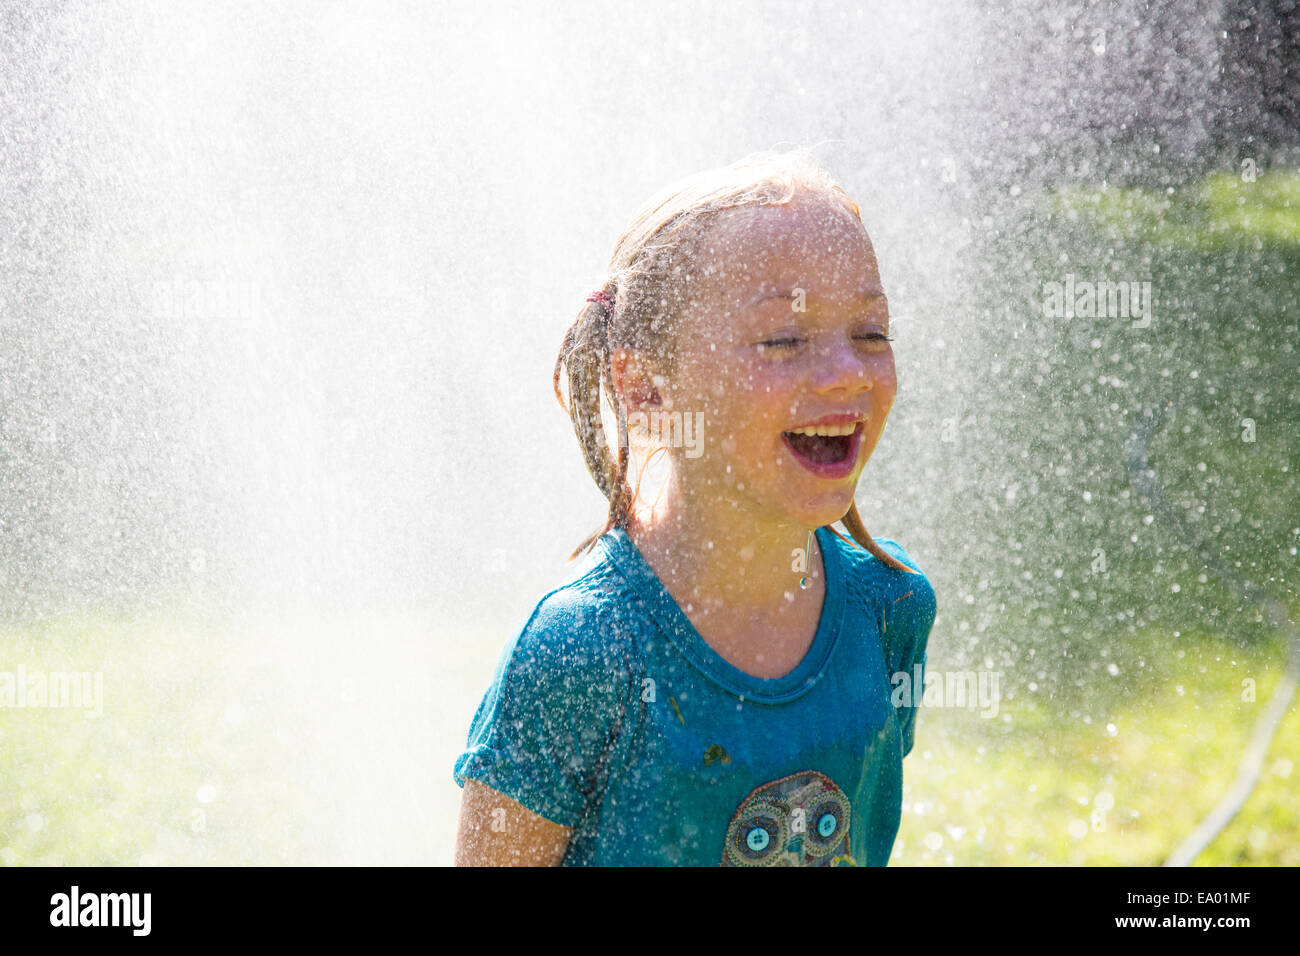 Mädchen immer spritzte durch Wasser Sprinkler im Garten Stockfoto